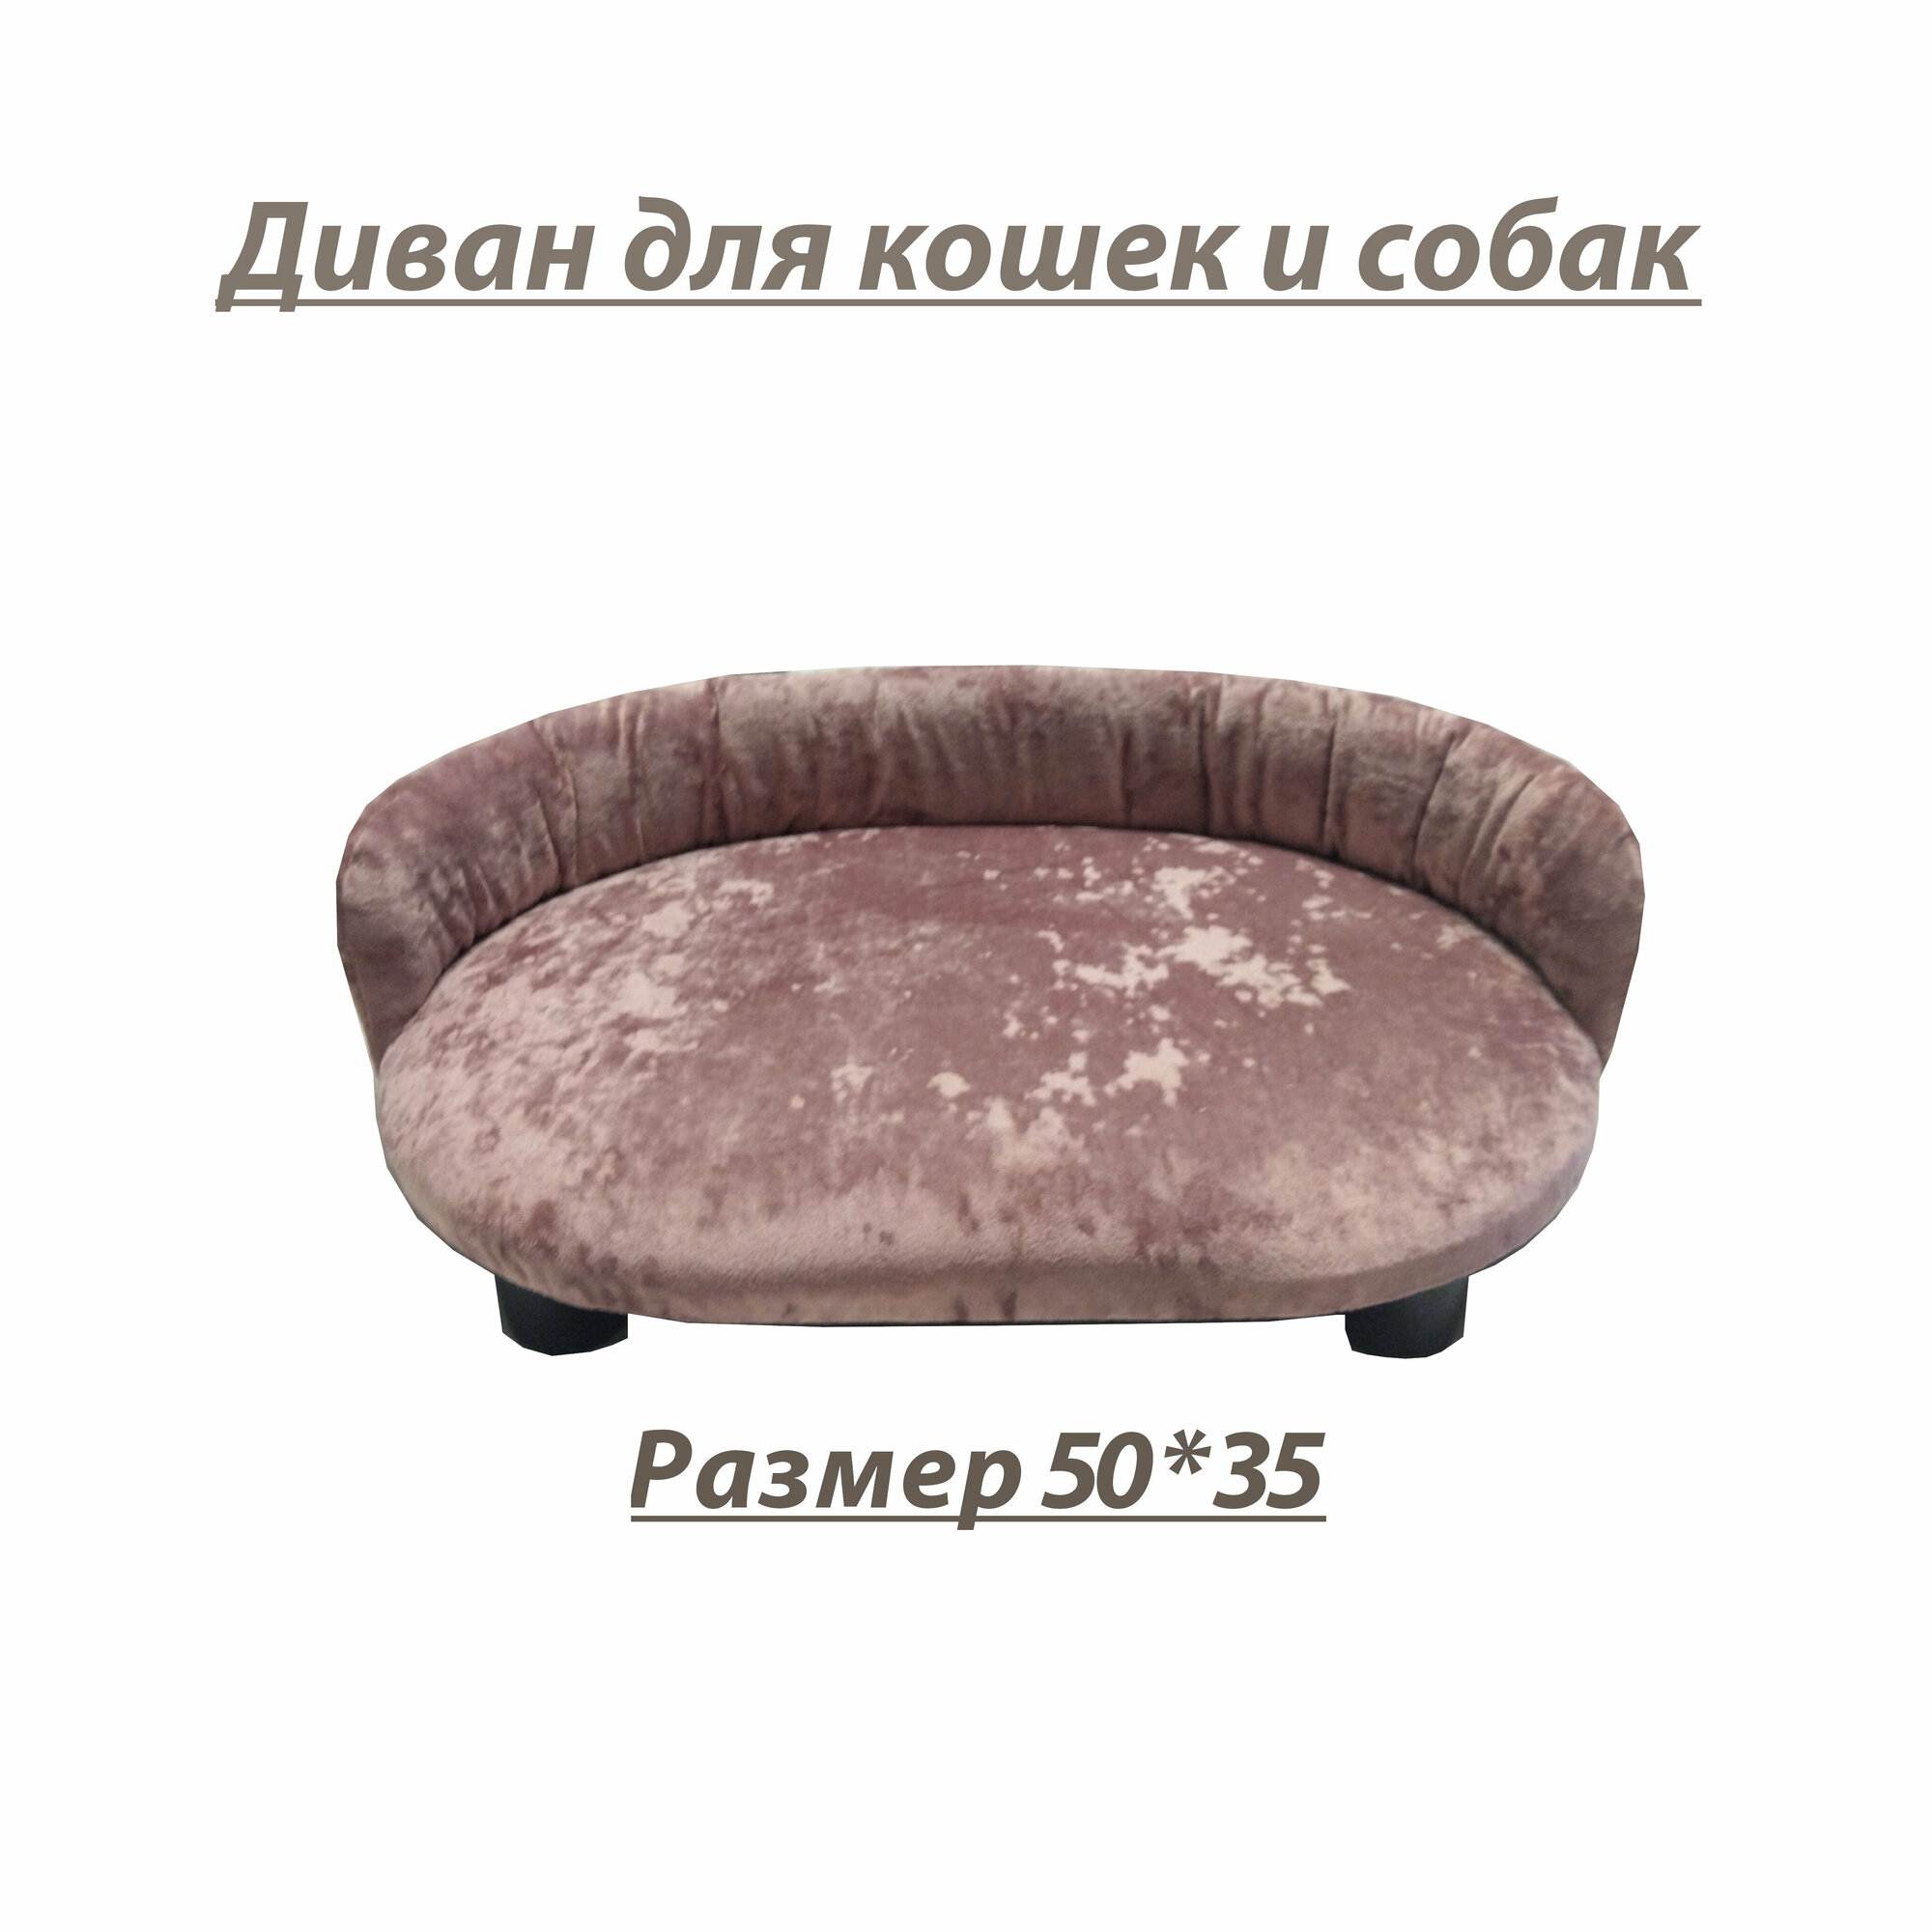 Лежанка, диван для кошек и собак, цвет розовый, 50 см